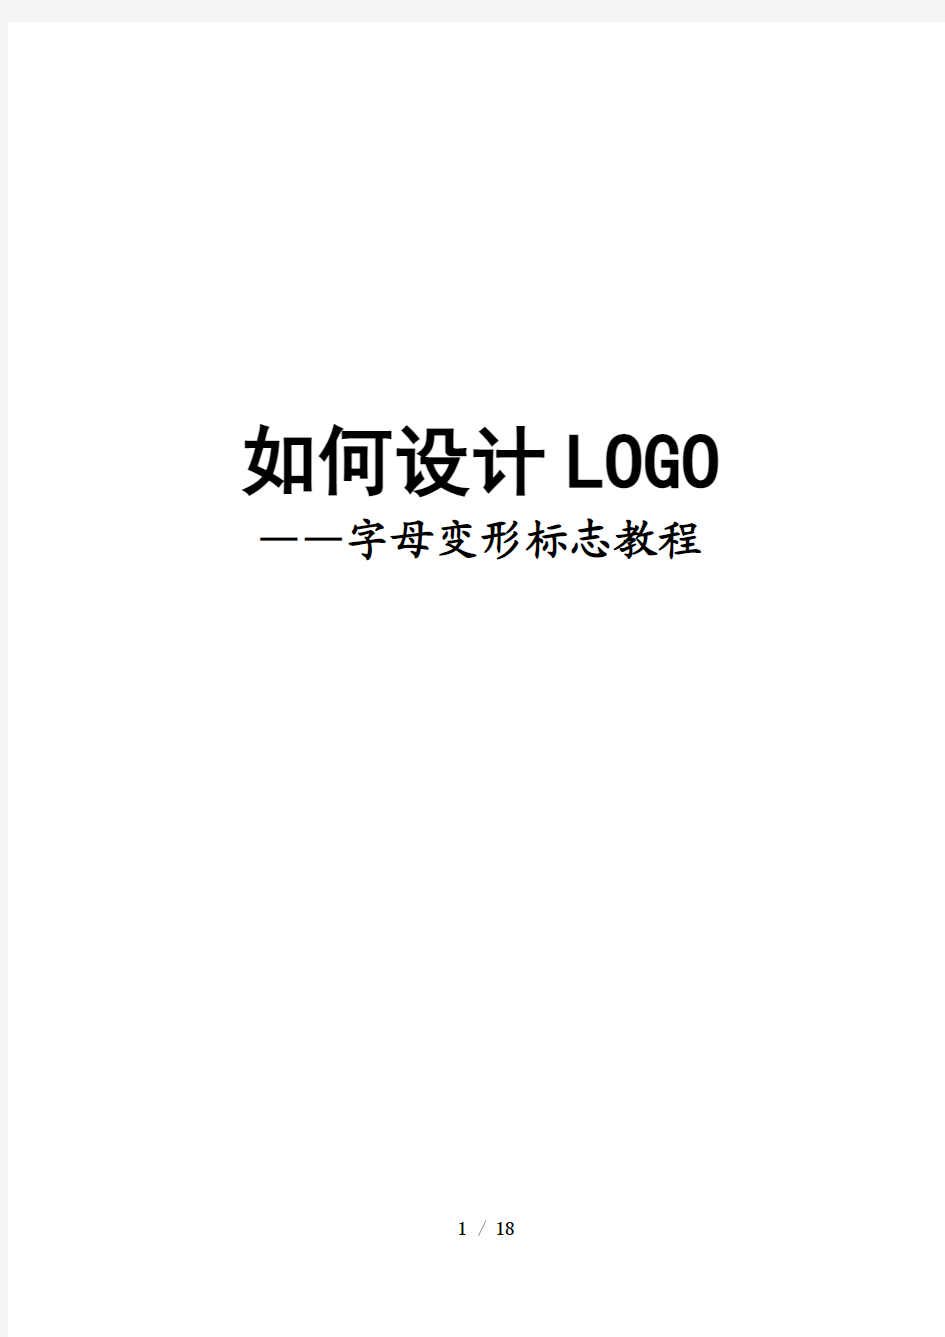 如何设计LOGO——字母变形标志教程